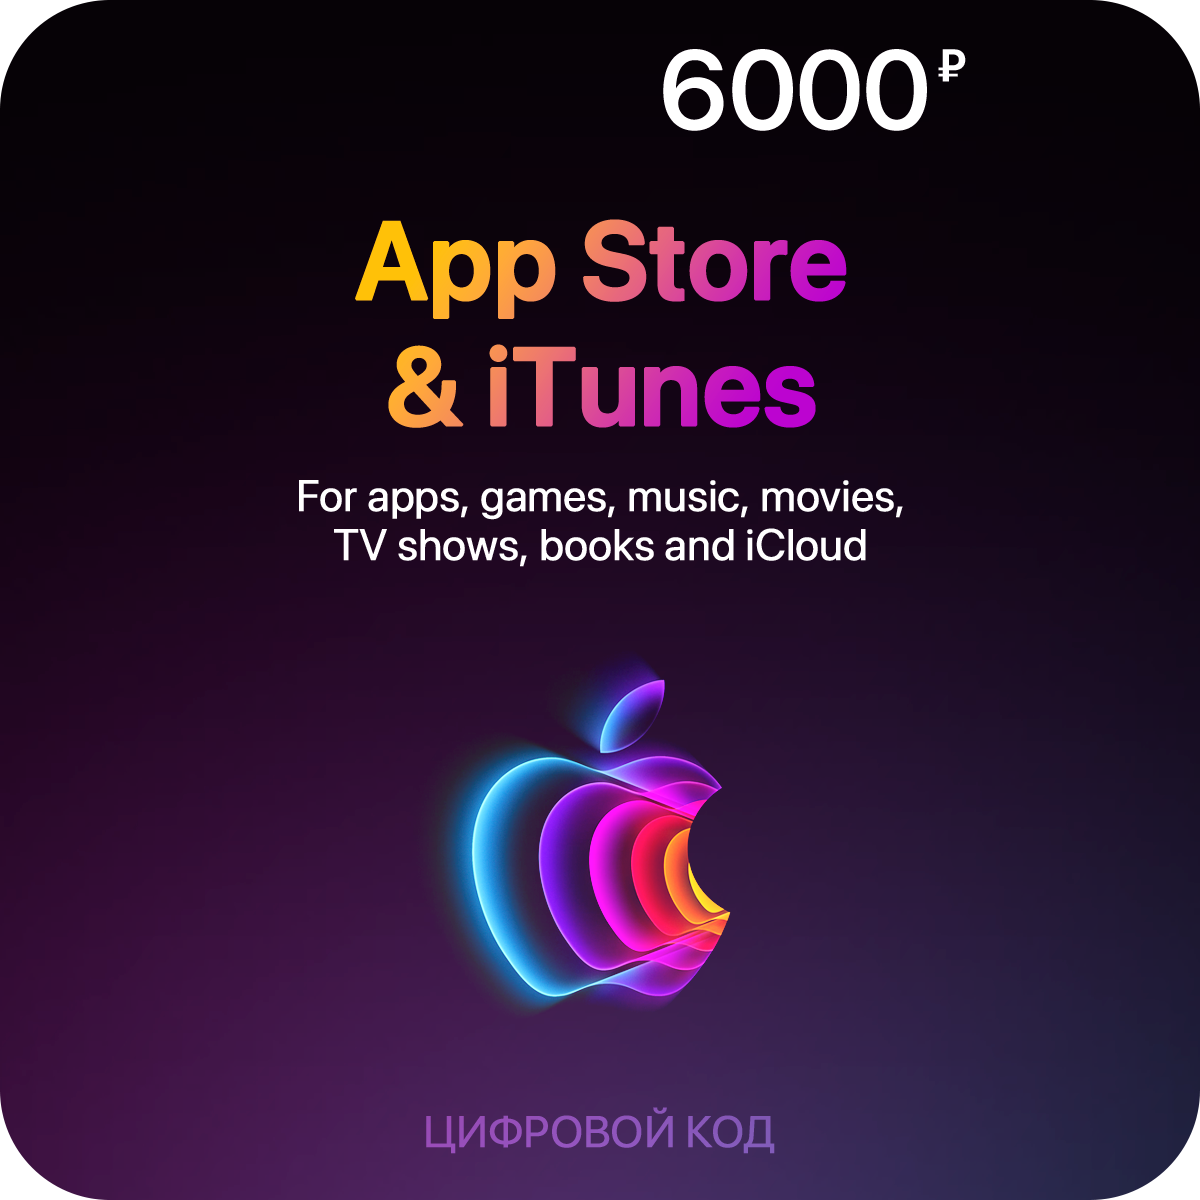 Пополнение счета App Store & iTunes (6000 рублей)